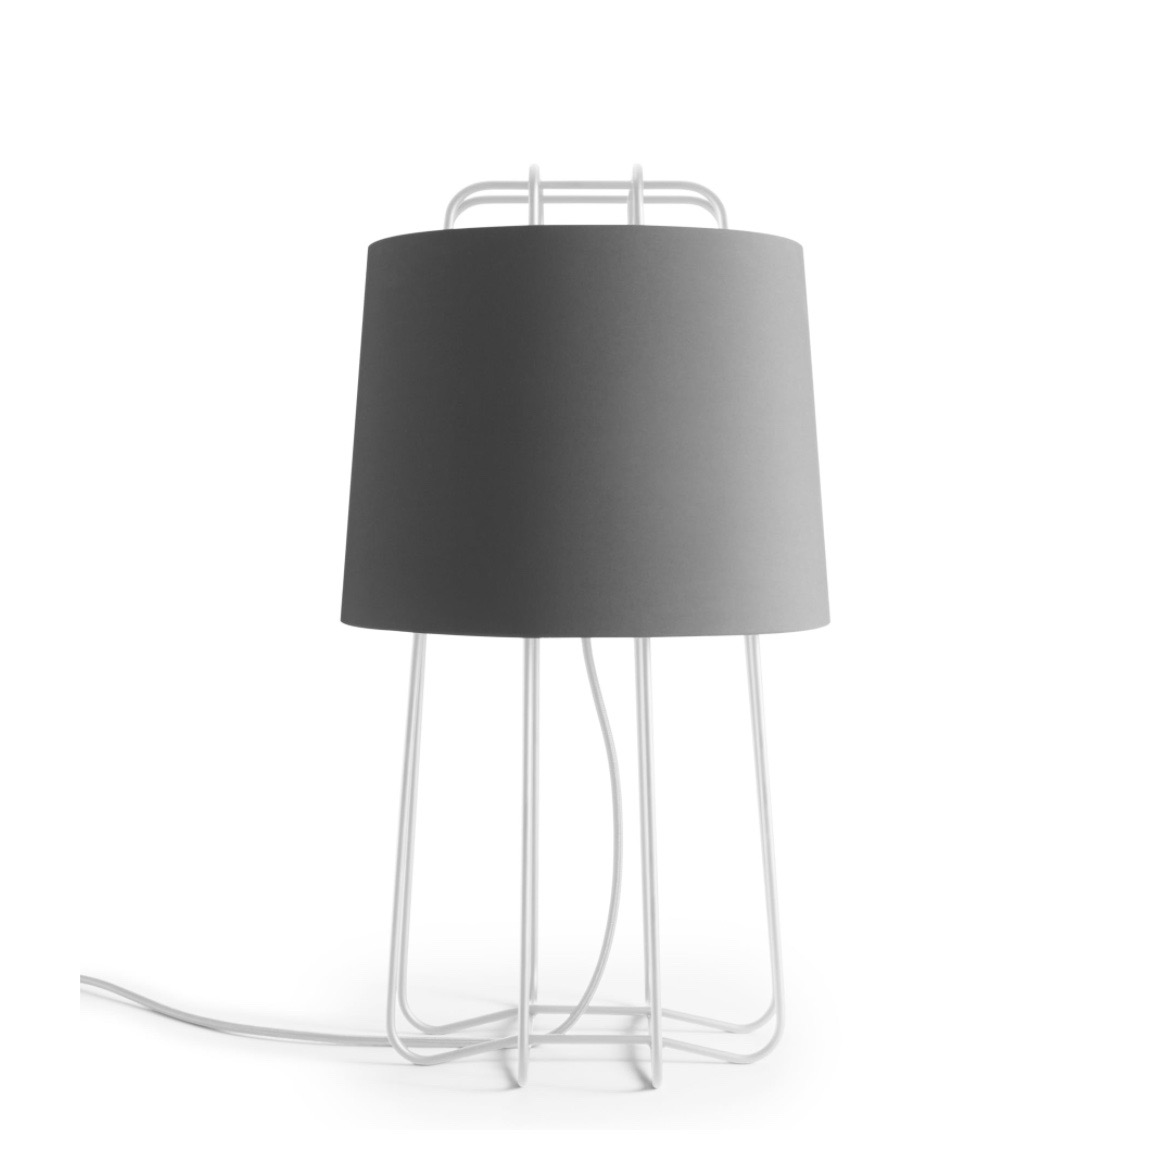 Perimeter Table Lamp By Blu Dot Hub, Blu Dot Perimeter Table Lamp